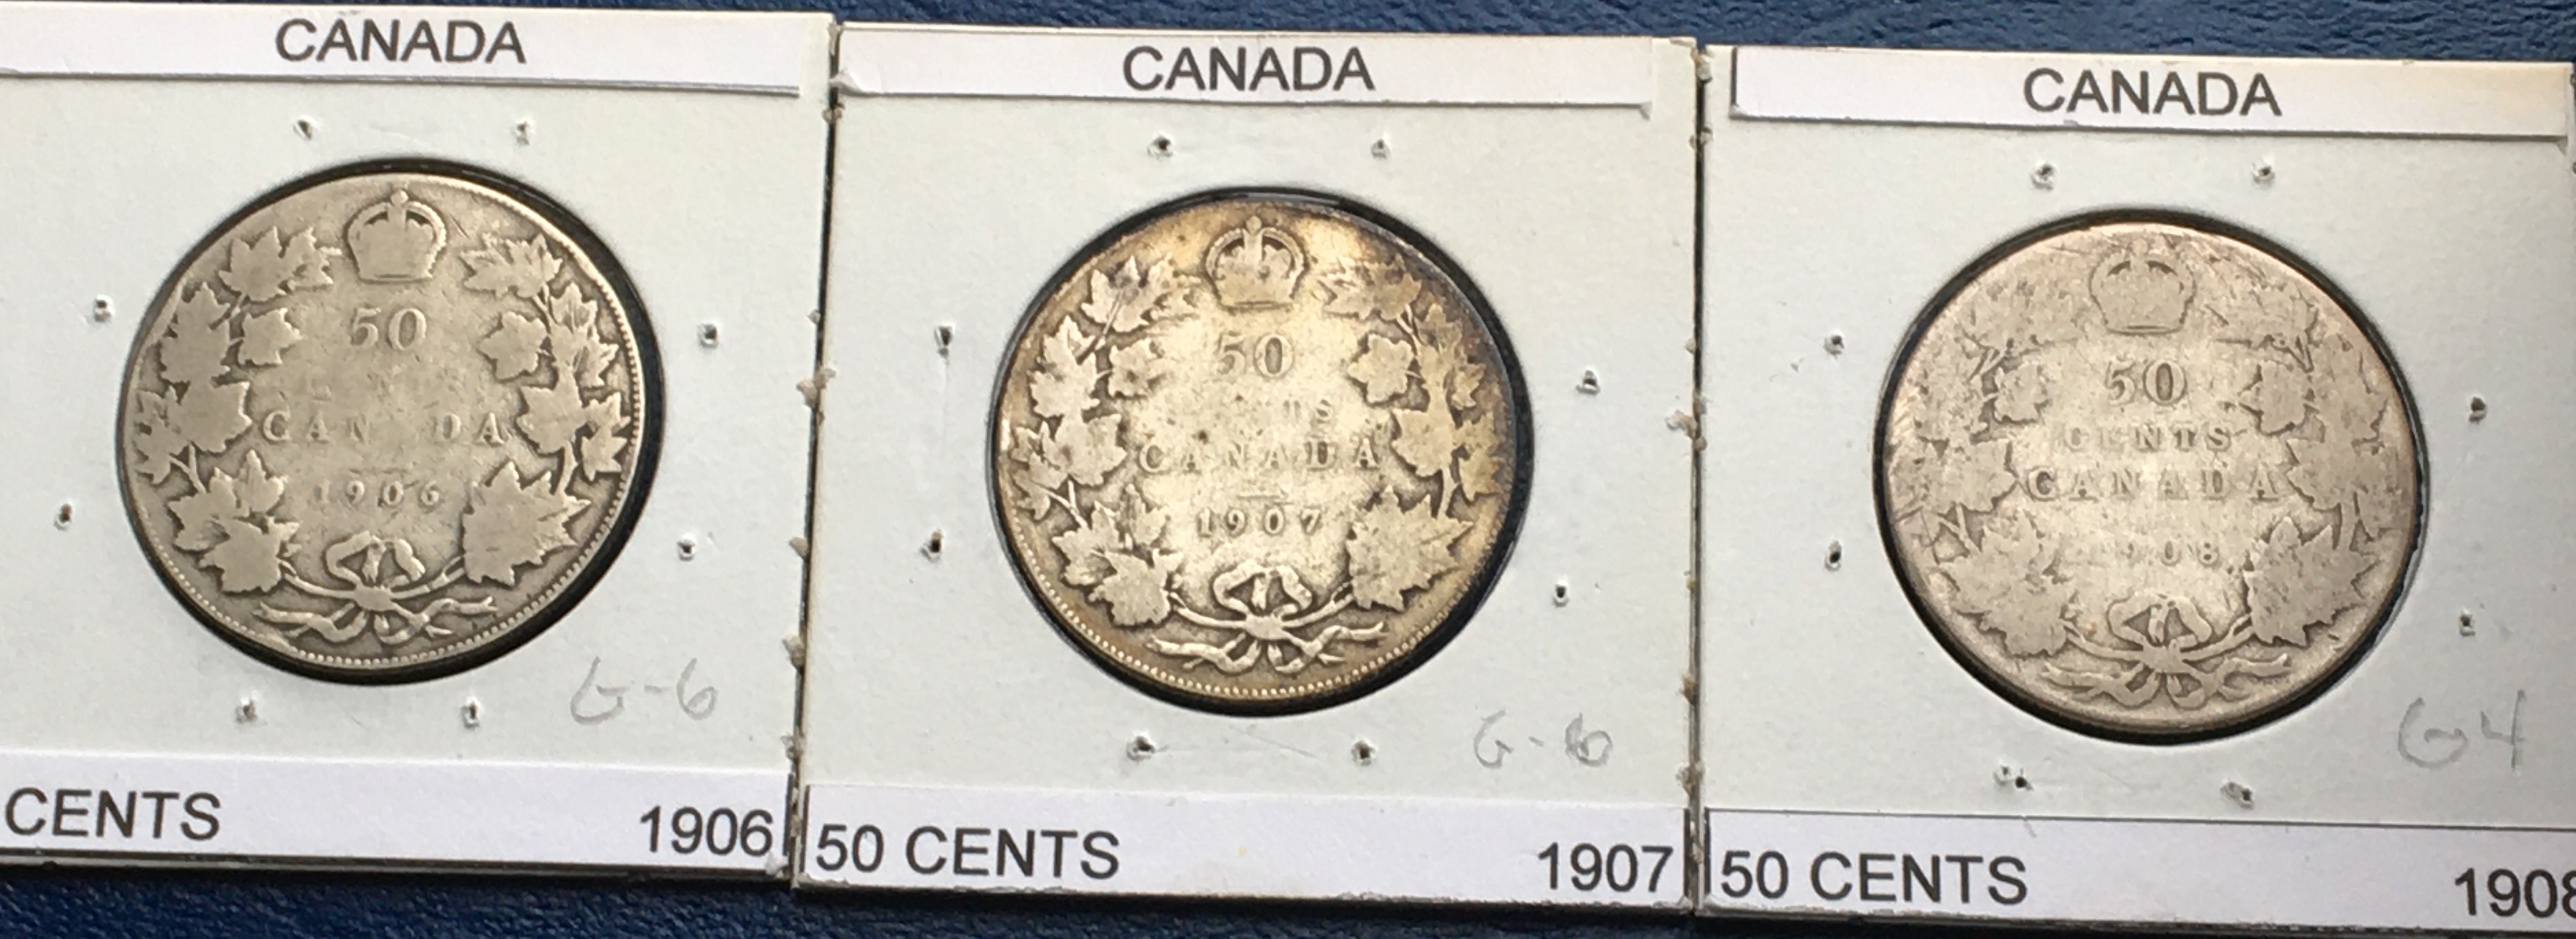 50 cents 1906 1907 et 1908 revers.JPG